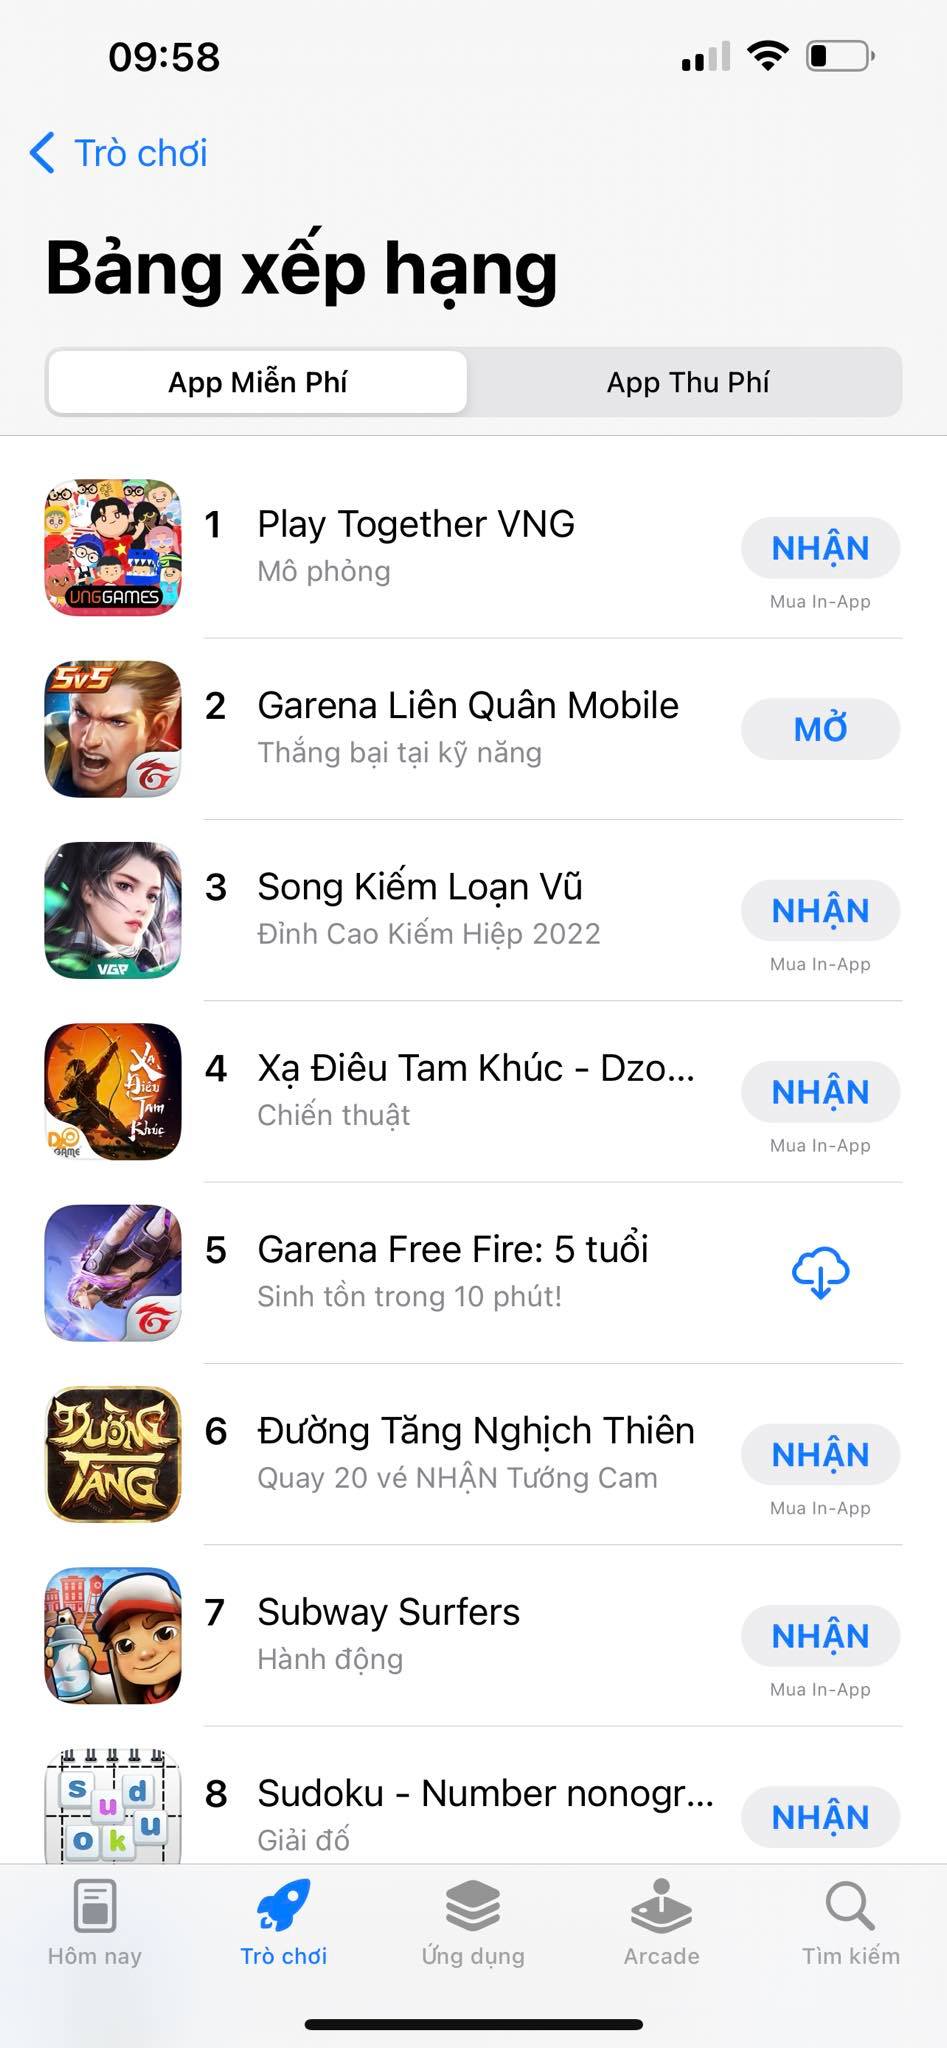 “Bom tấn” của VNG mới mua về đã đứng Top 1 trên App Store Việt Nam, xếp trên cả Liên Quân, Free Fire tụt dốc - Ảnh 1.